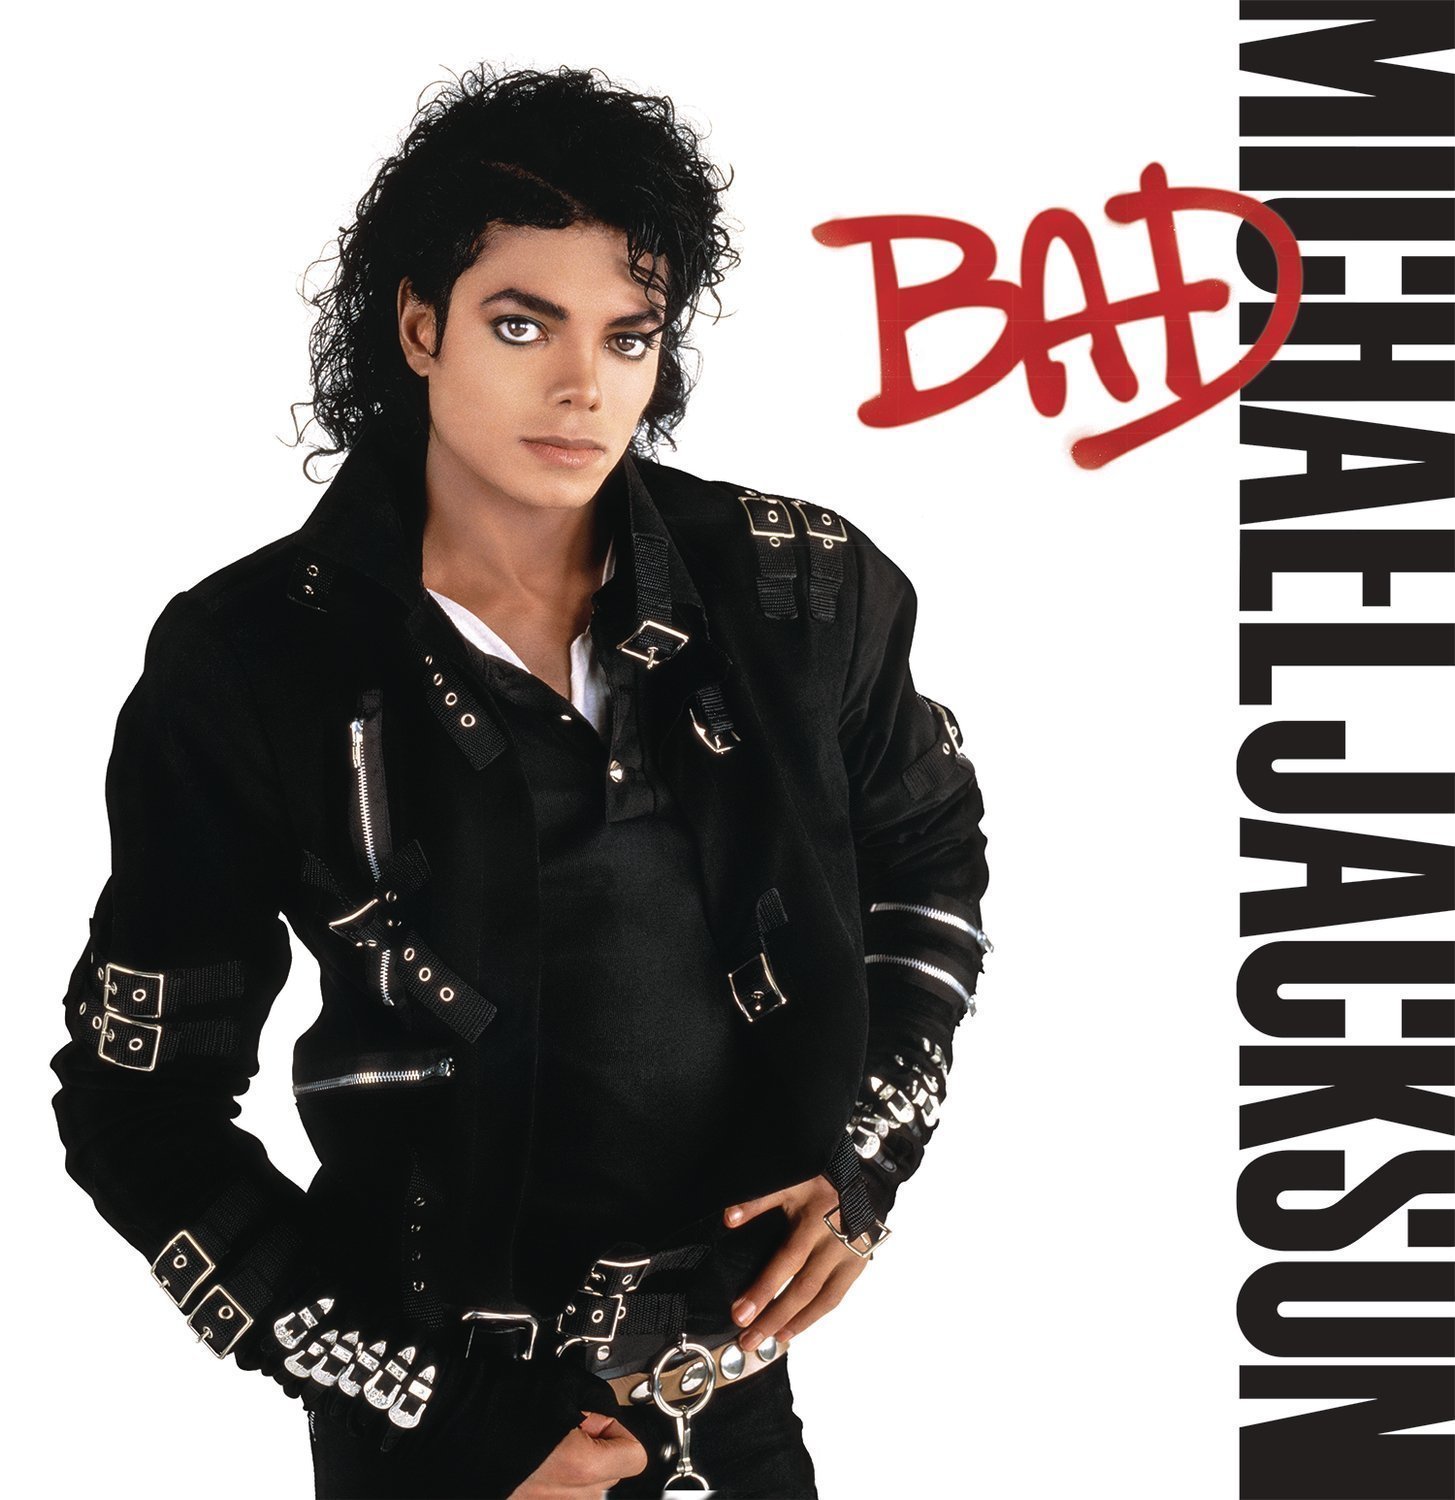 Disque vinyle Michael Jackson Bad (LP)